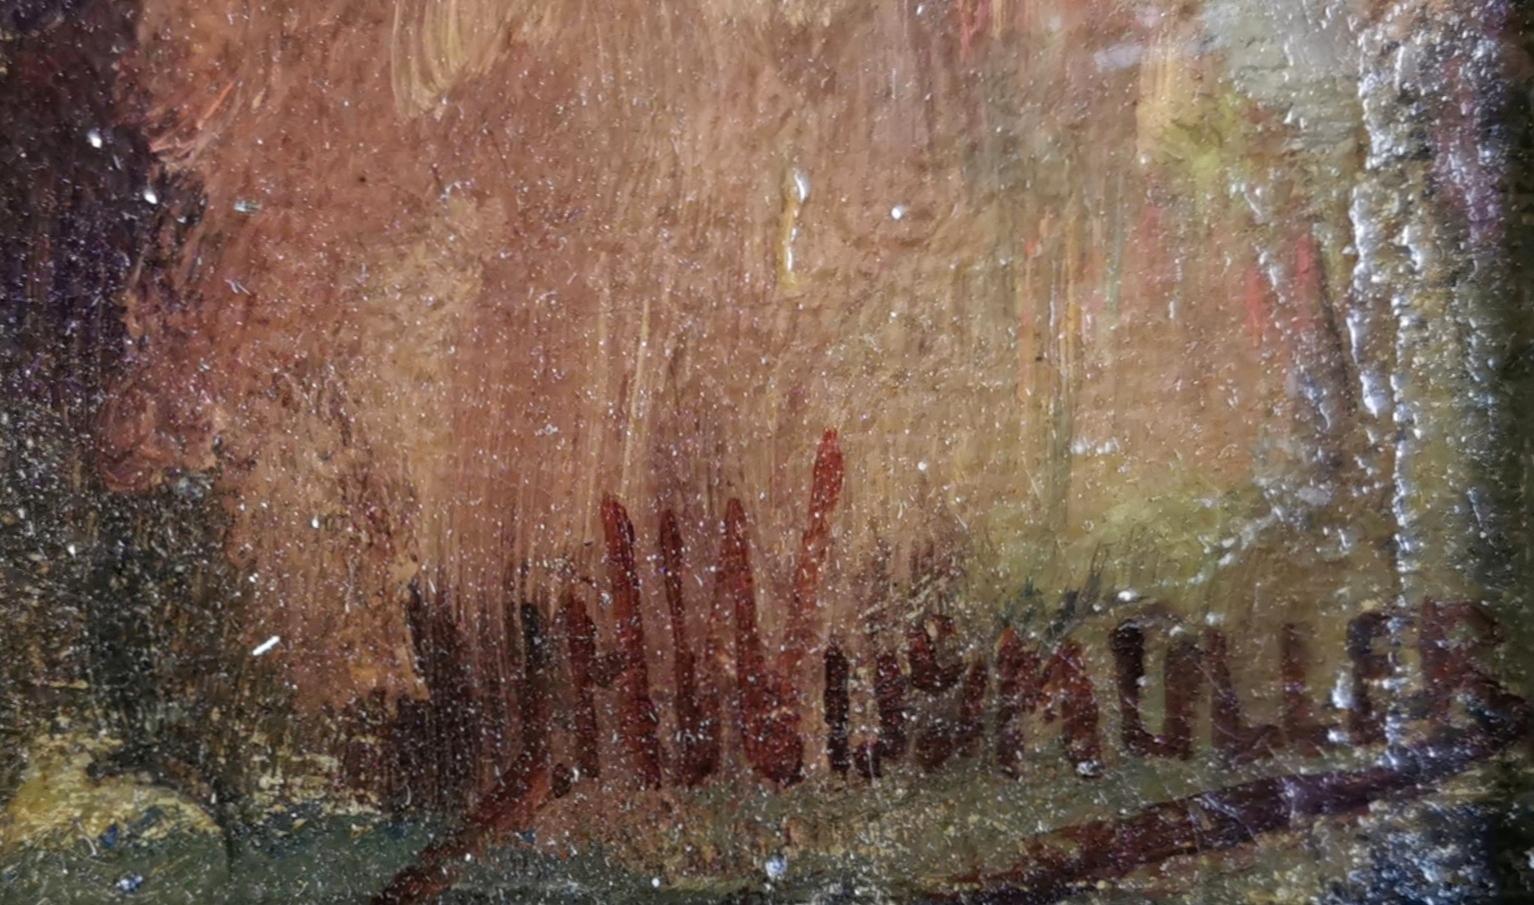 Jan Hillebrand Wijsmuller (1855 Amsterdam - 1925 ebd.), Spätsommerliche Flusslandschaft, Öl auf Leinwand, doubliert, 34 x 56 cm (Innenmaß), 43 x 64 cm (Rahmen), rechts unten signiert J[an] H[illebrand] Wijsmuller.

- in gutem Zustand, der Rahmen mit